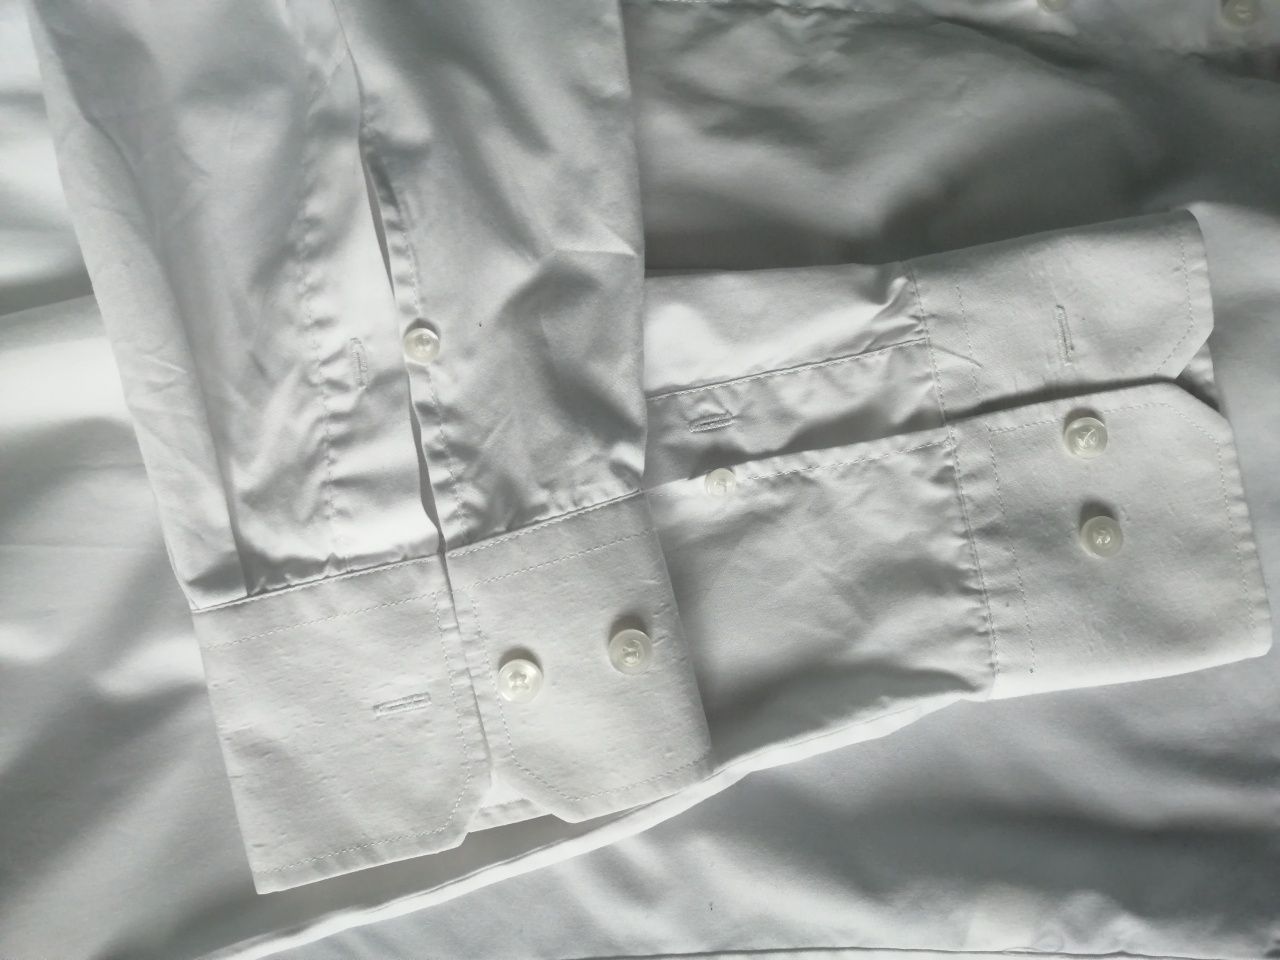 Klasyczna biała koszula Recman 43